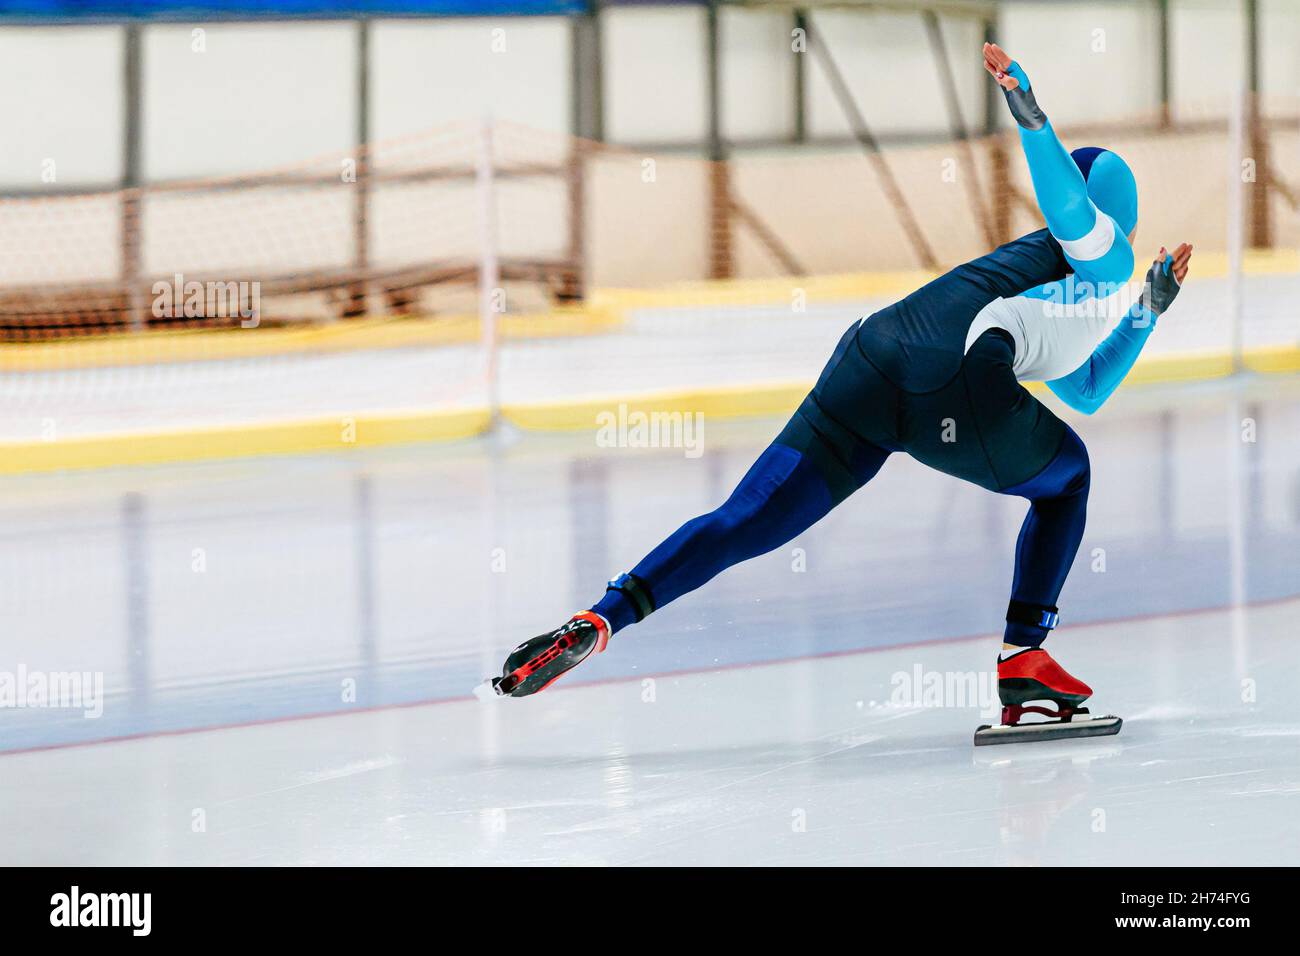 une patineuse féminine est en compétition de patinage de vitesse Banque D'Images